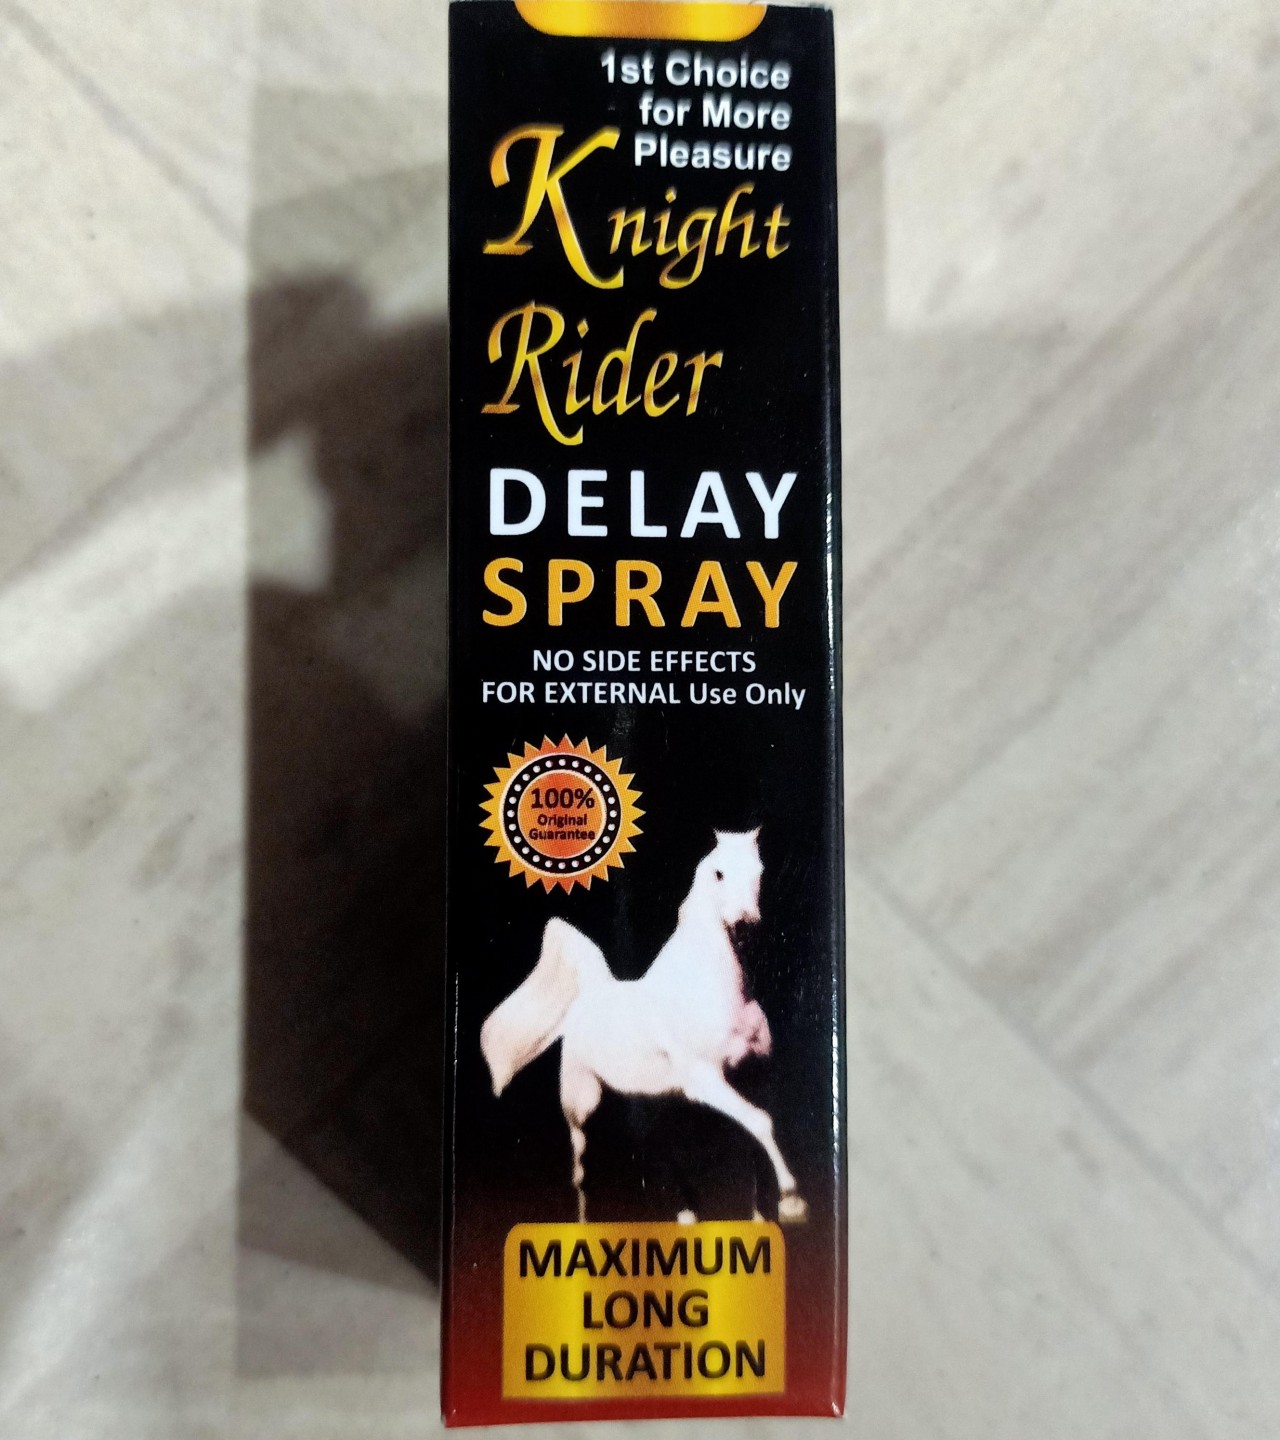 Knight Rider Delay Spray Maximum Long Duration